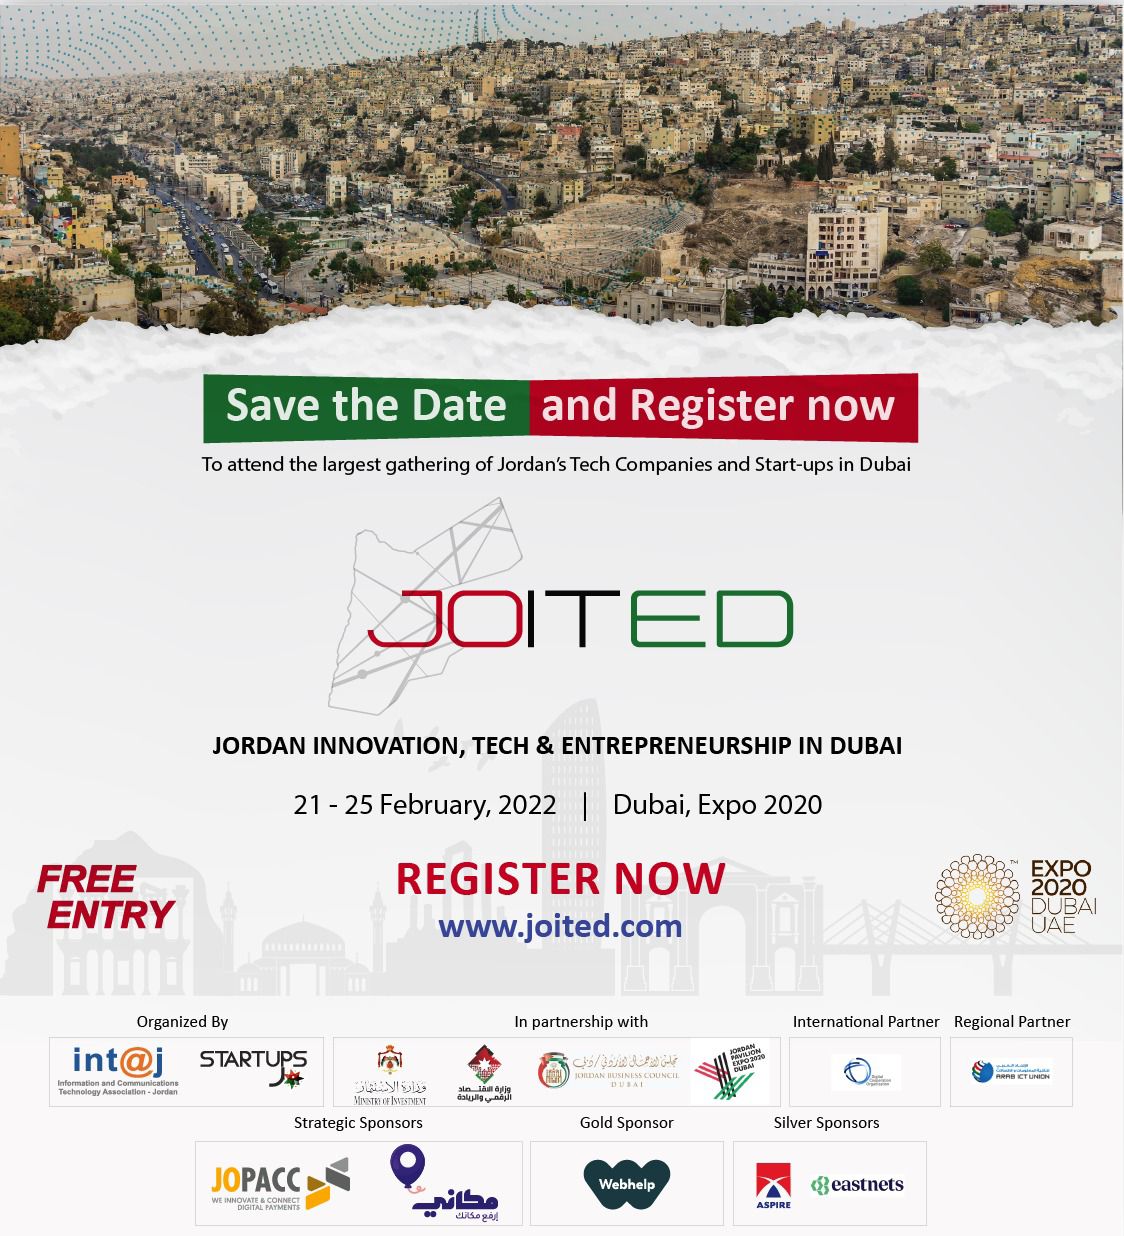 《انتاج》 تُعلن جدول أعمال منتدى فعالية "الابتكار والتكنولوجيا والريادة الأردنية في دبي 《JOITED》